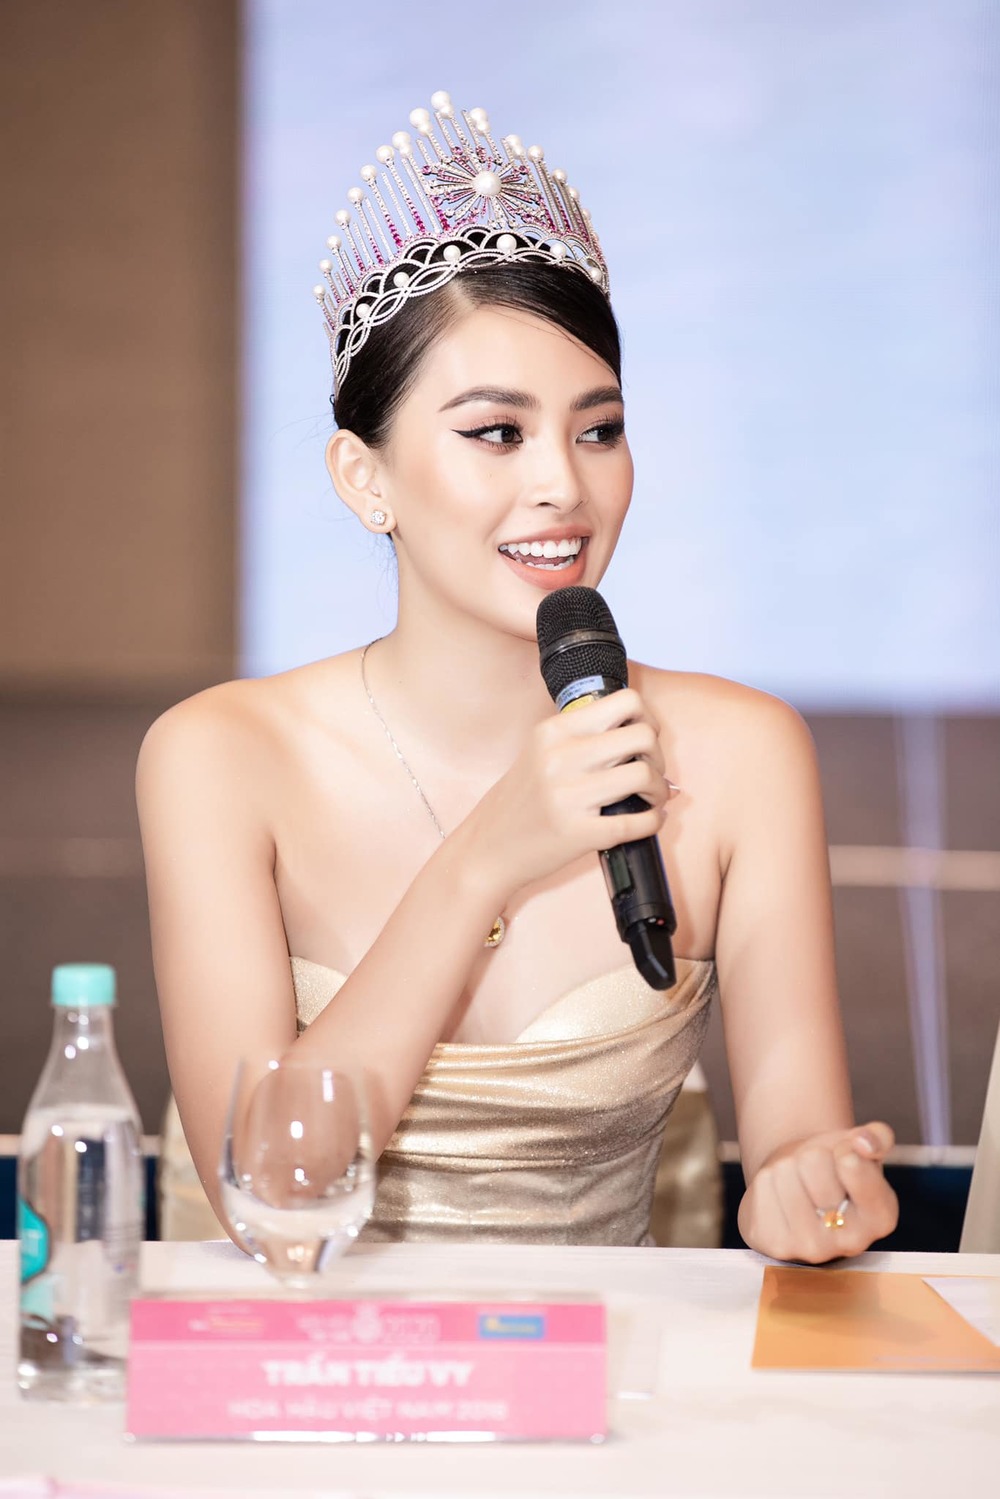 
Đương kim Hoa hậu xuất hiện trong buổi họp báo với bộ cánh cúp ngực ánh kim. (Ảnh: BTC)